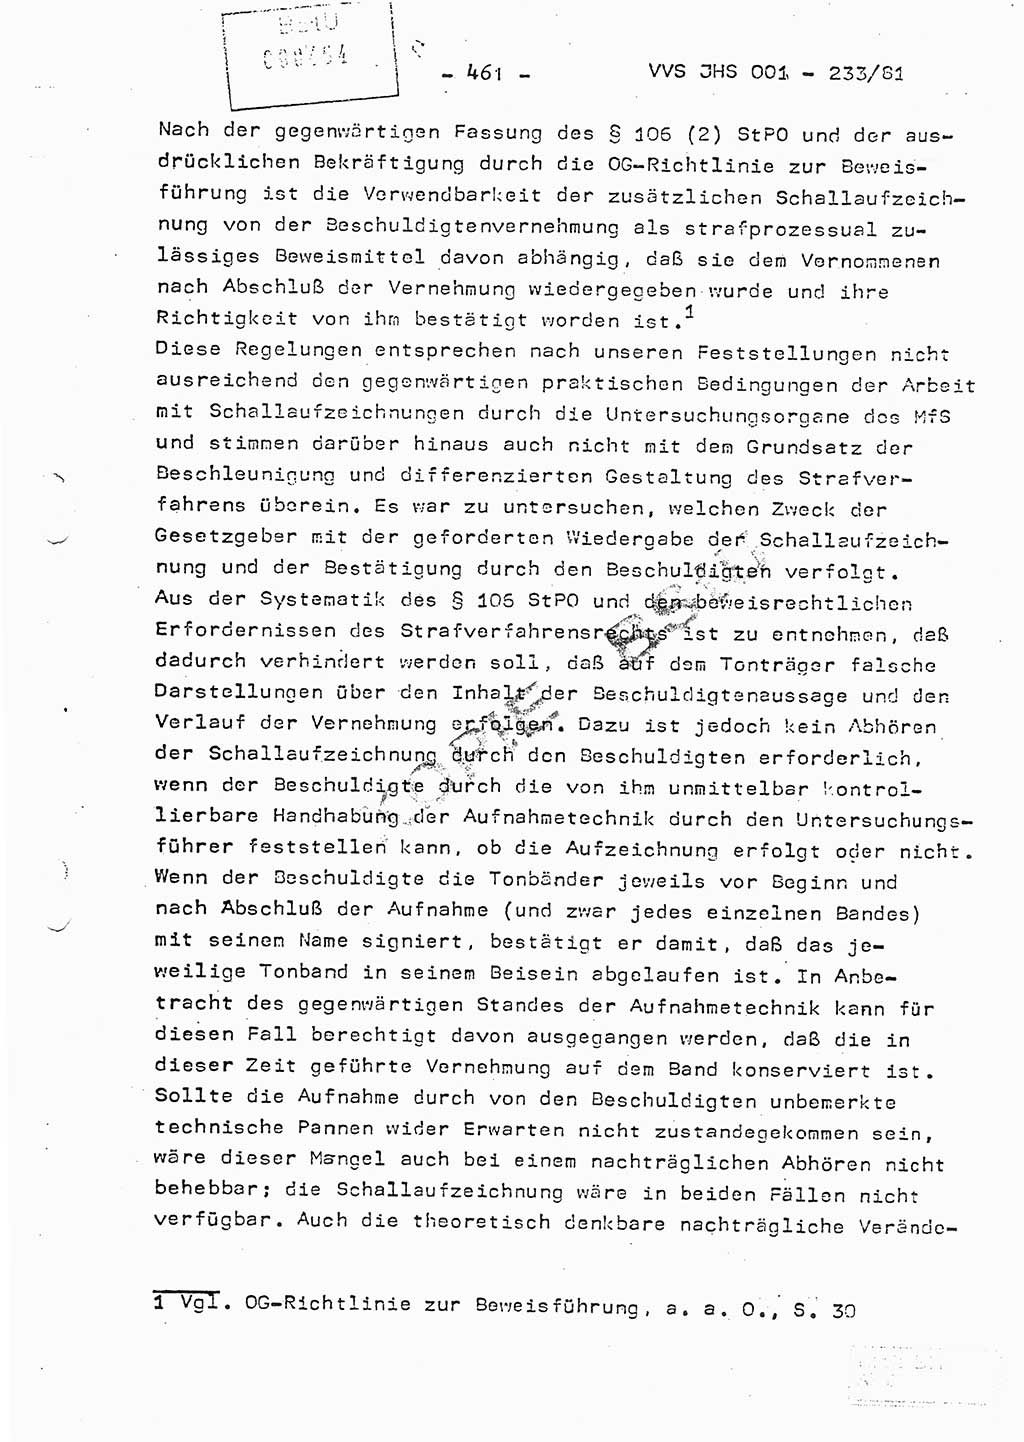 Dissertation Oberstleutnant Horst Zank (JHS), Oberstleutnant Dr. Karl-Heinz Knoblauch (JHS), Oberstleutnant Gustav-Adolf Kowalewski (HA Ⅸ), Oberstleutnant Wolfgang Plötner (HA Ⅸ), Ministerium für Staatssicherheit (MfS) [Deutsche Demokratische Republik (DDR)], Juristische Hochschule (JHS), Vertrauliche Verschlußsache (VVS) o001-233/81, Potsdam 1981, Blatt 461 (Diss. MfS DDR JHS VVS o001-233/81 1981, Bl. 461)